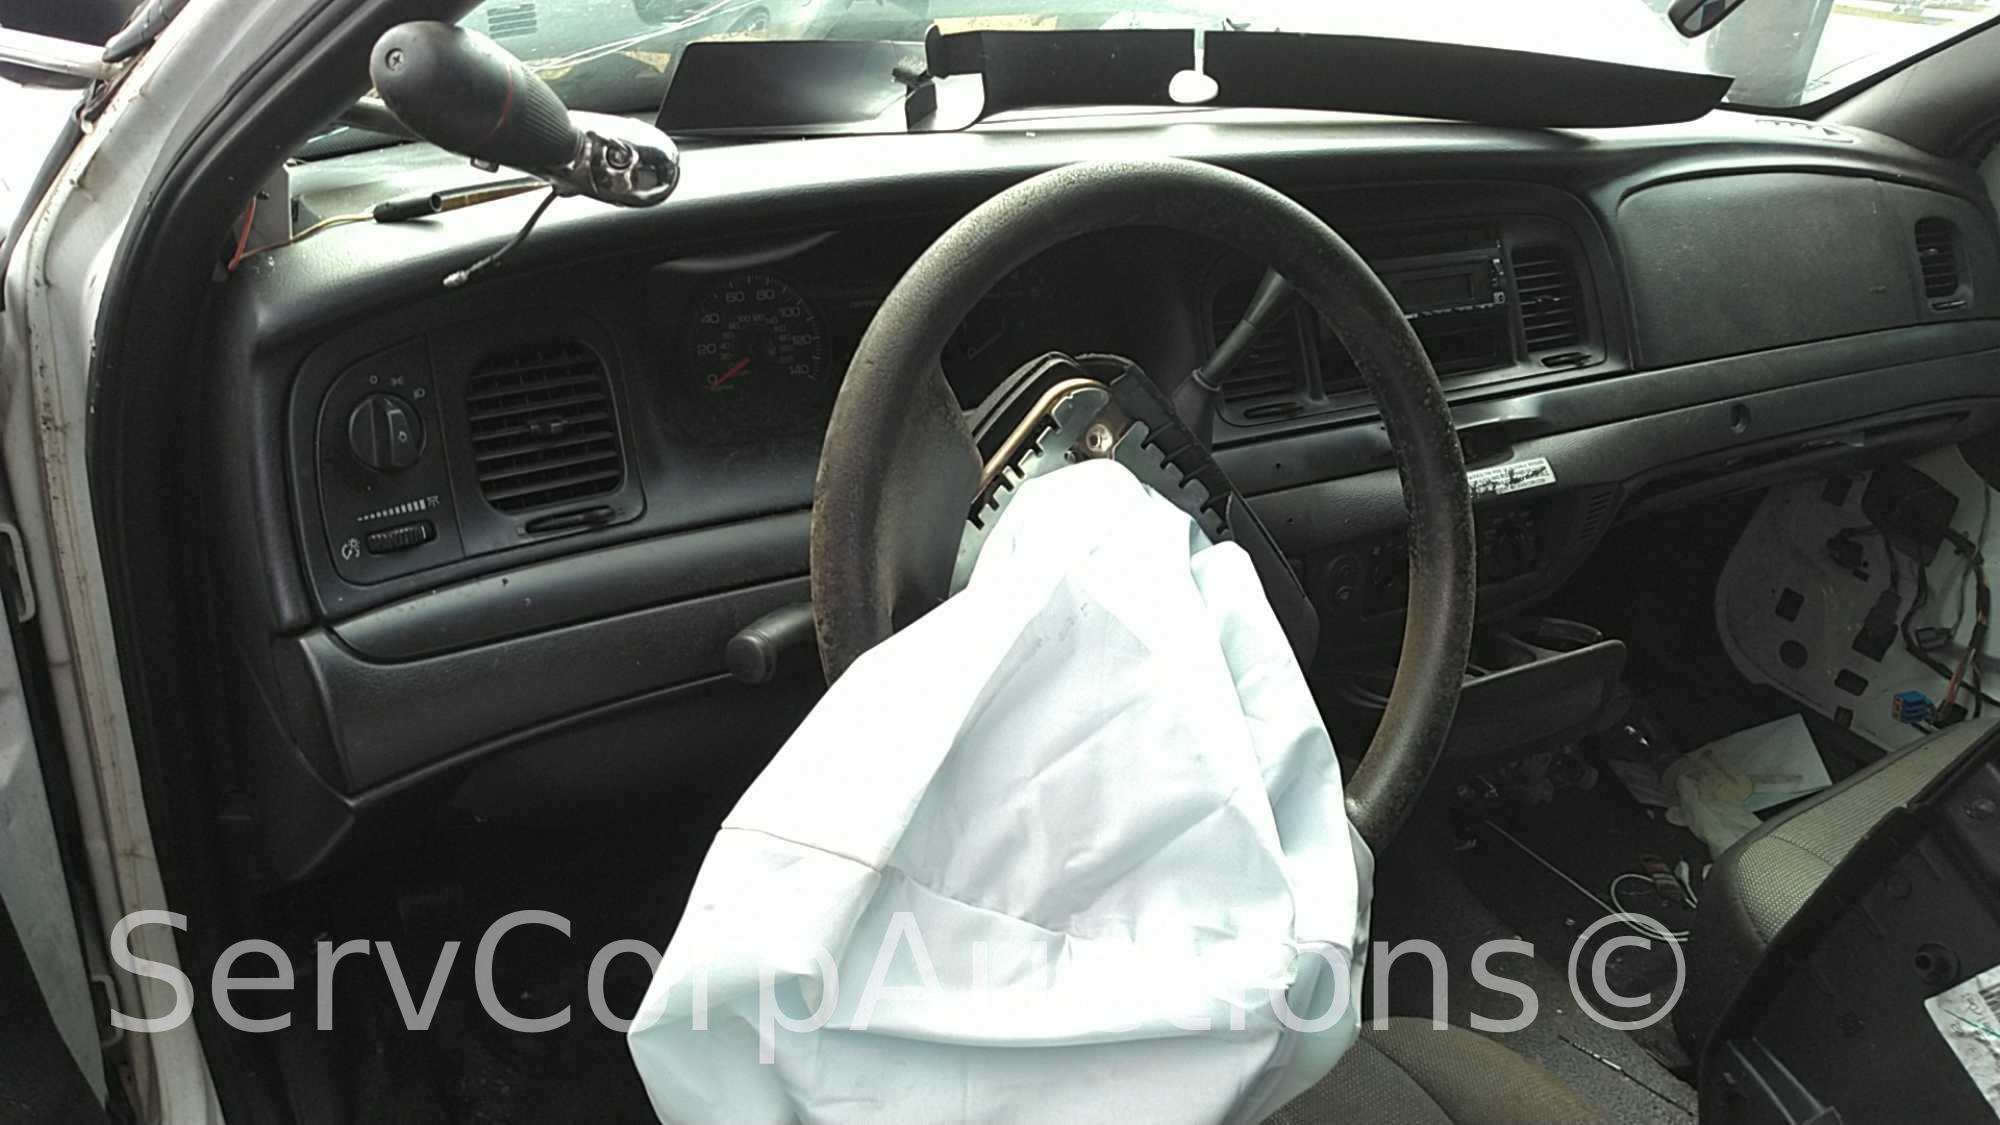 2008 Ford Crown Victoria Passenger Car, VIN # 2FAFP71V08X140612